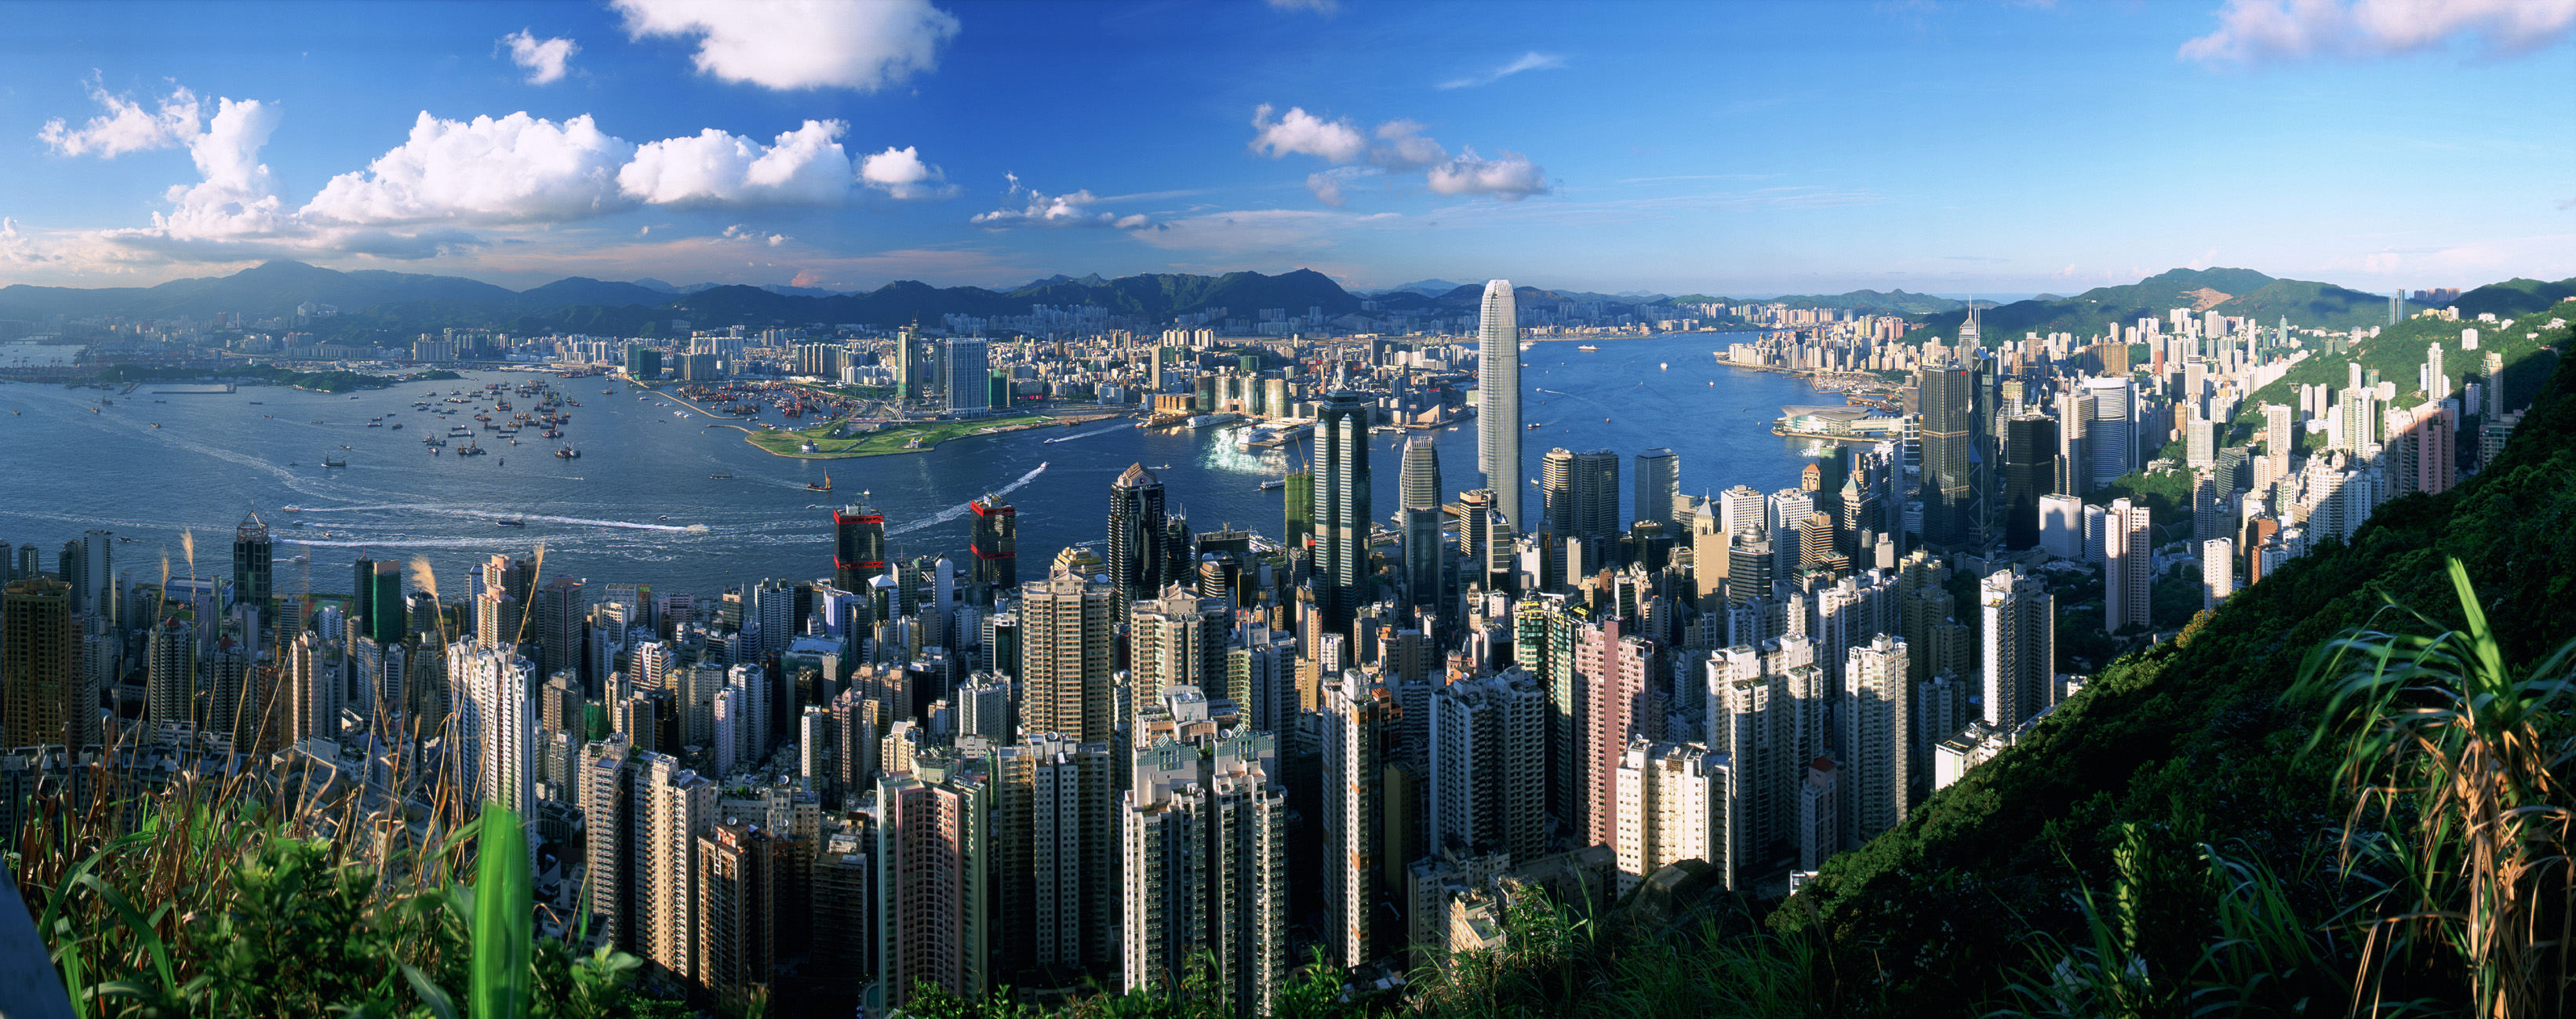 cityscapes, architecture, buildings, Hong Kong - desktop wallpaper